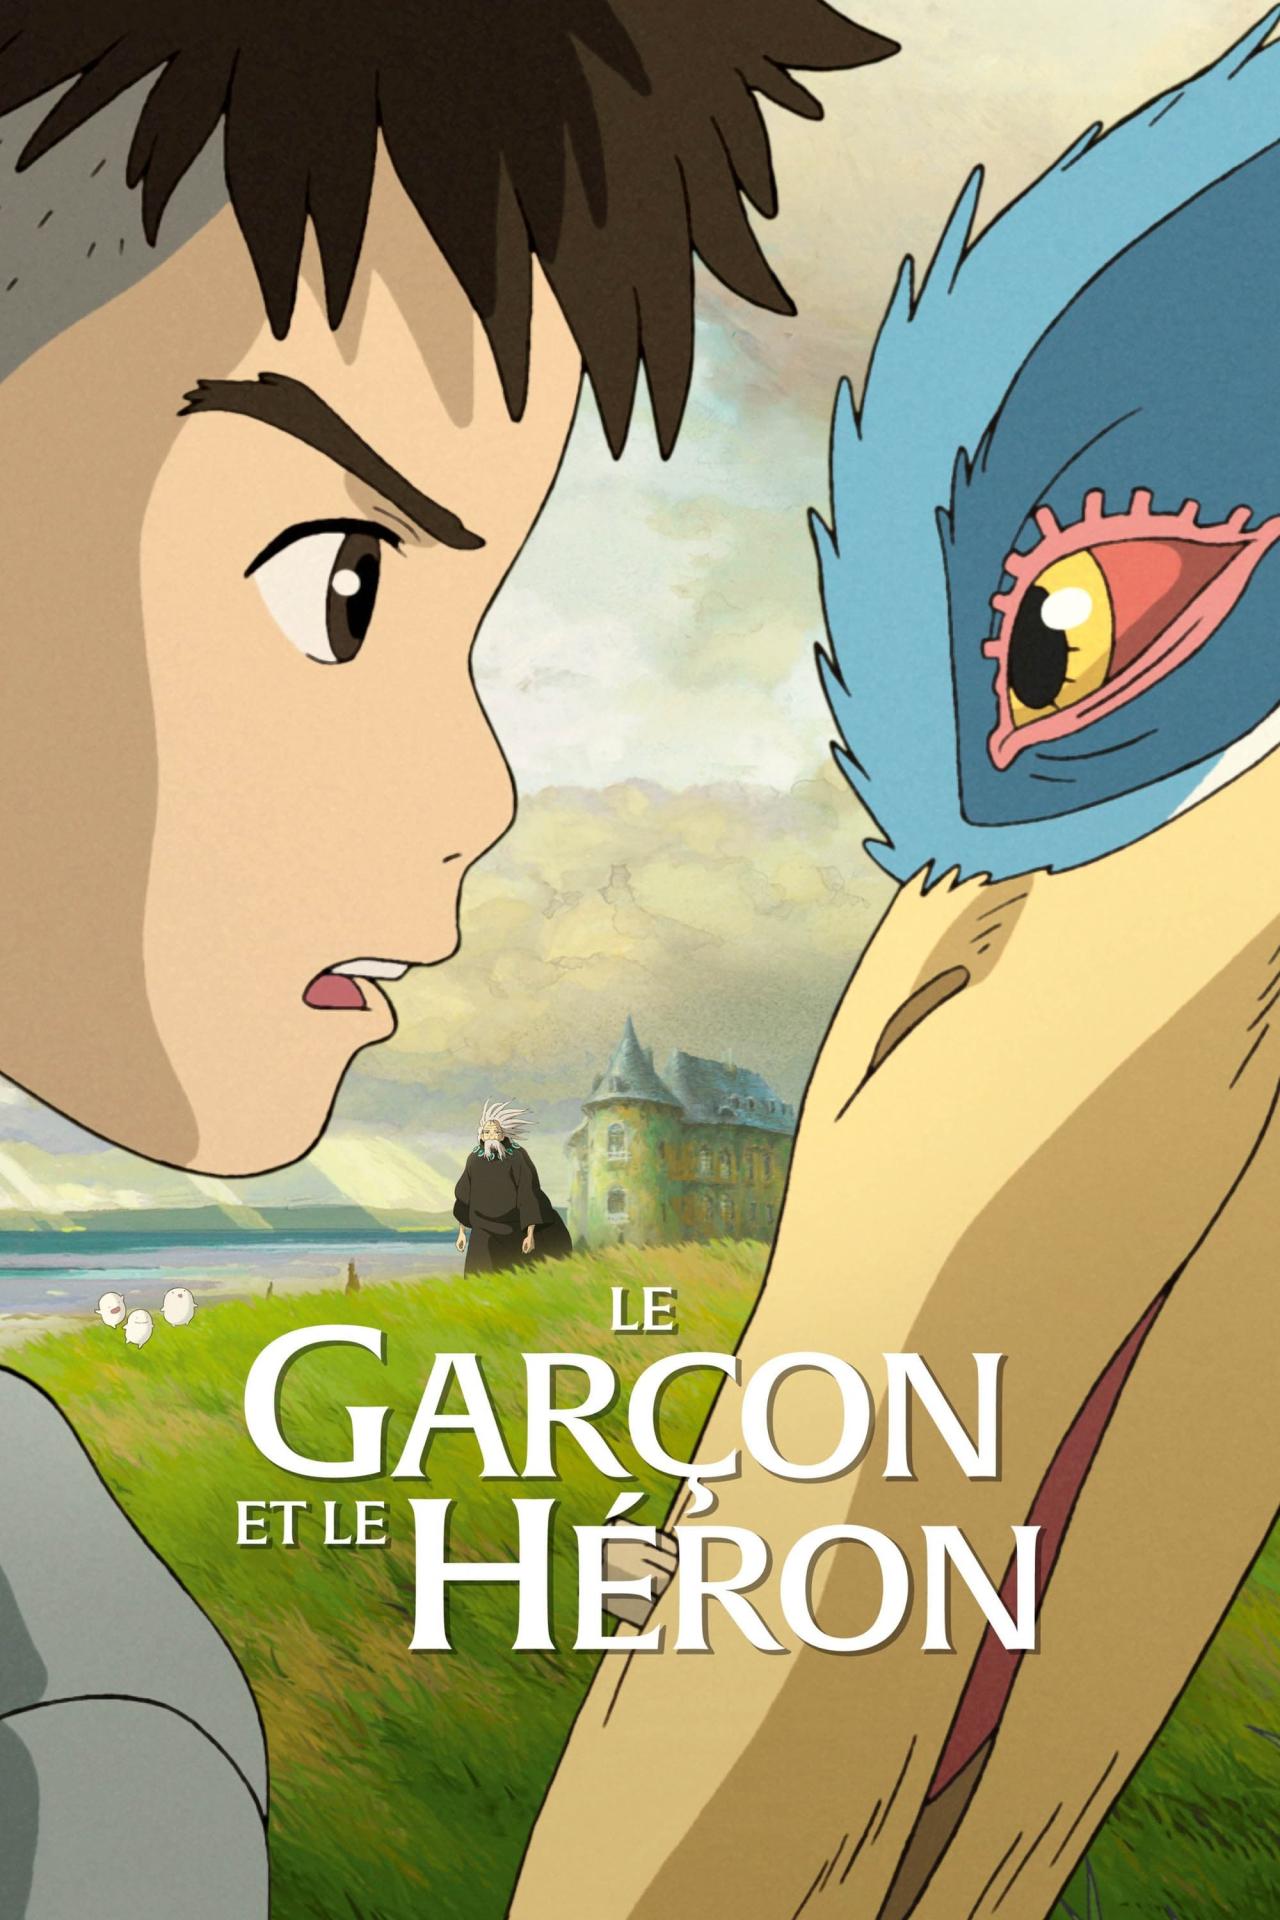 Le Garçon et le héron est-il disponible sur Netflix ou autre ?